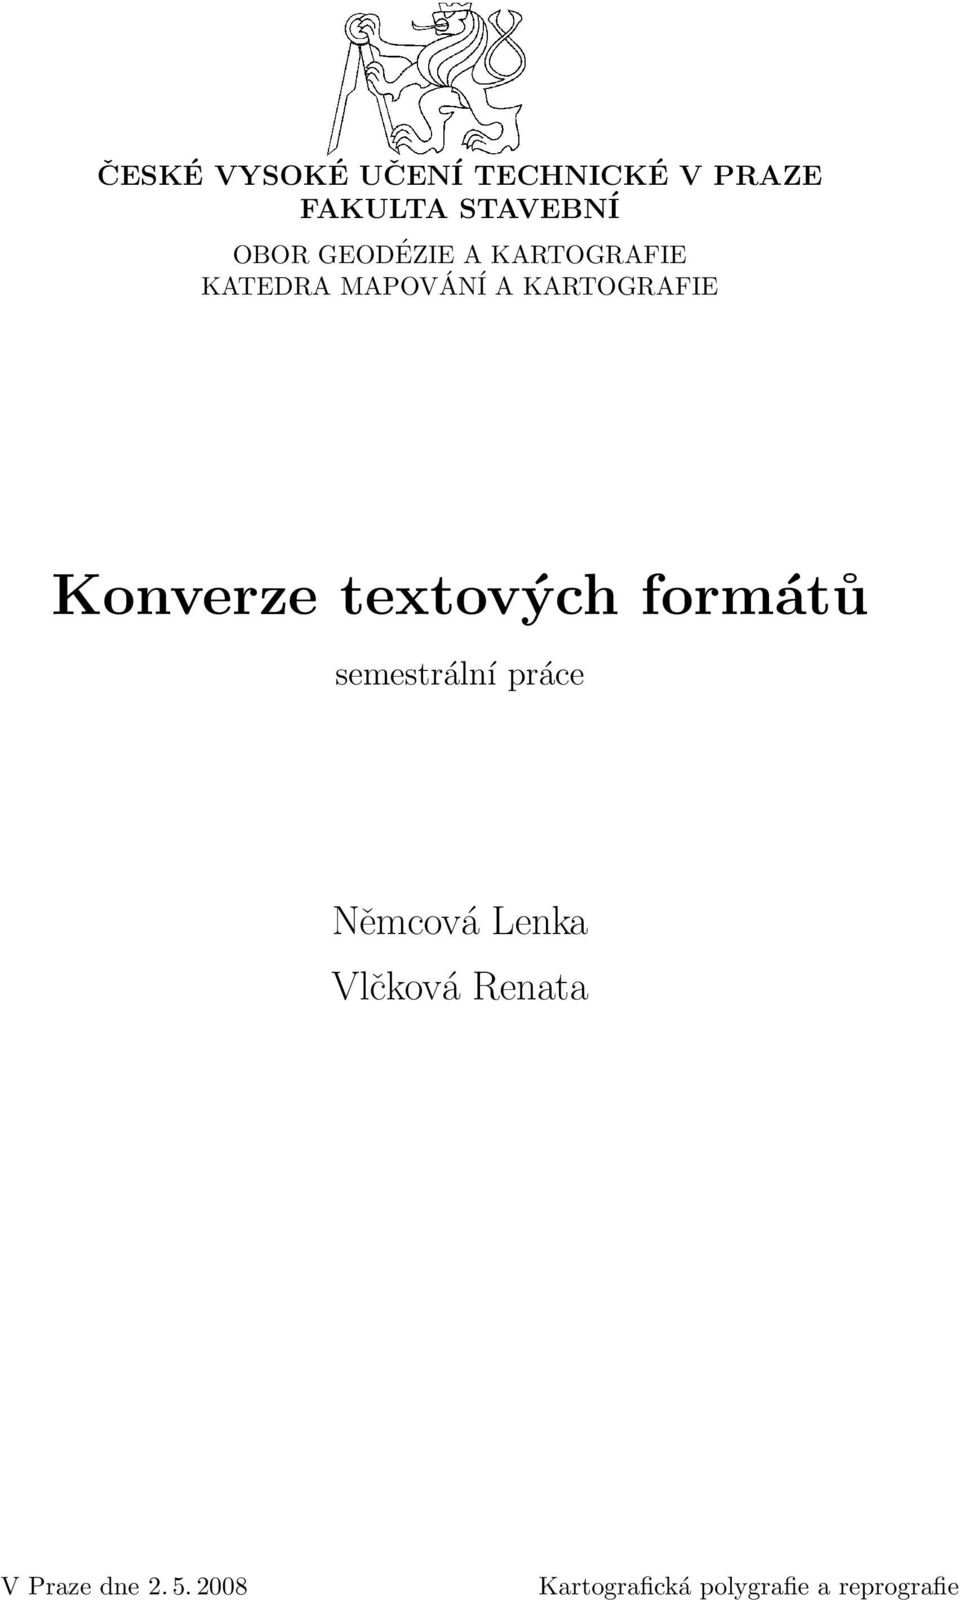 Konverze textových formátů semestrální práce Němcová Lenka